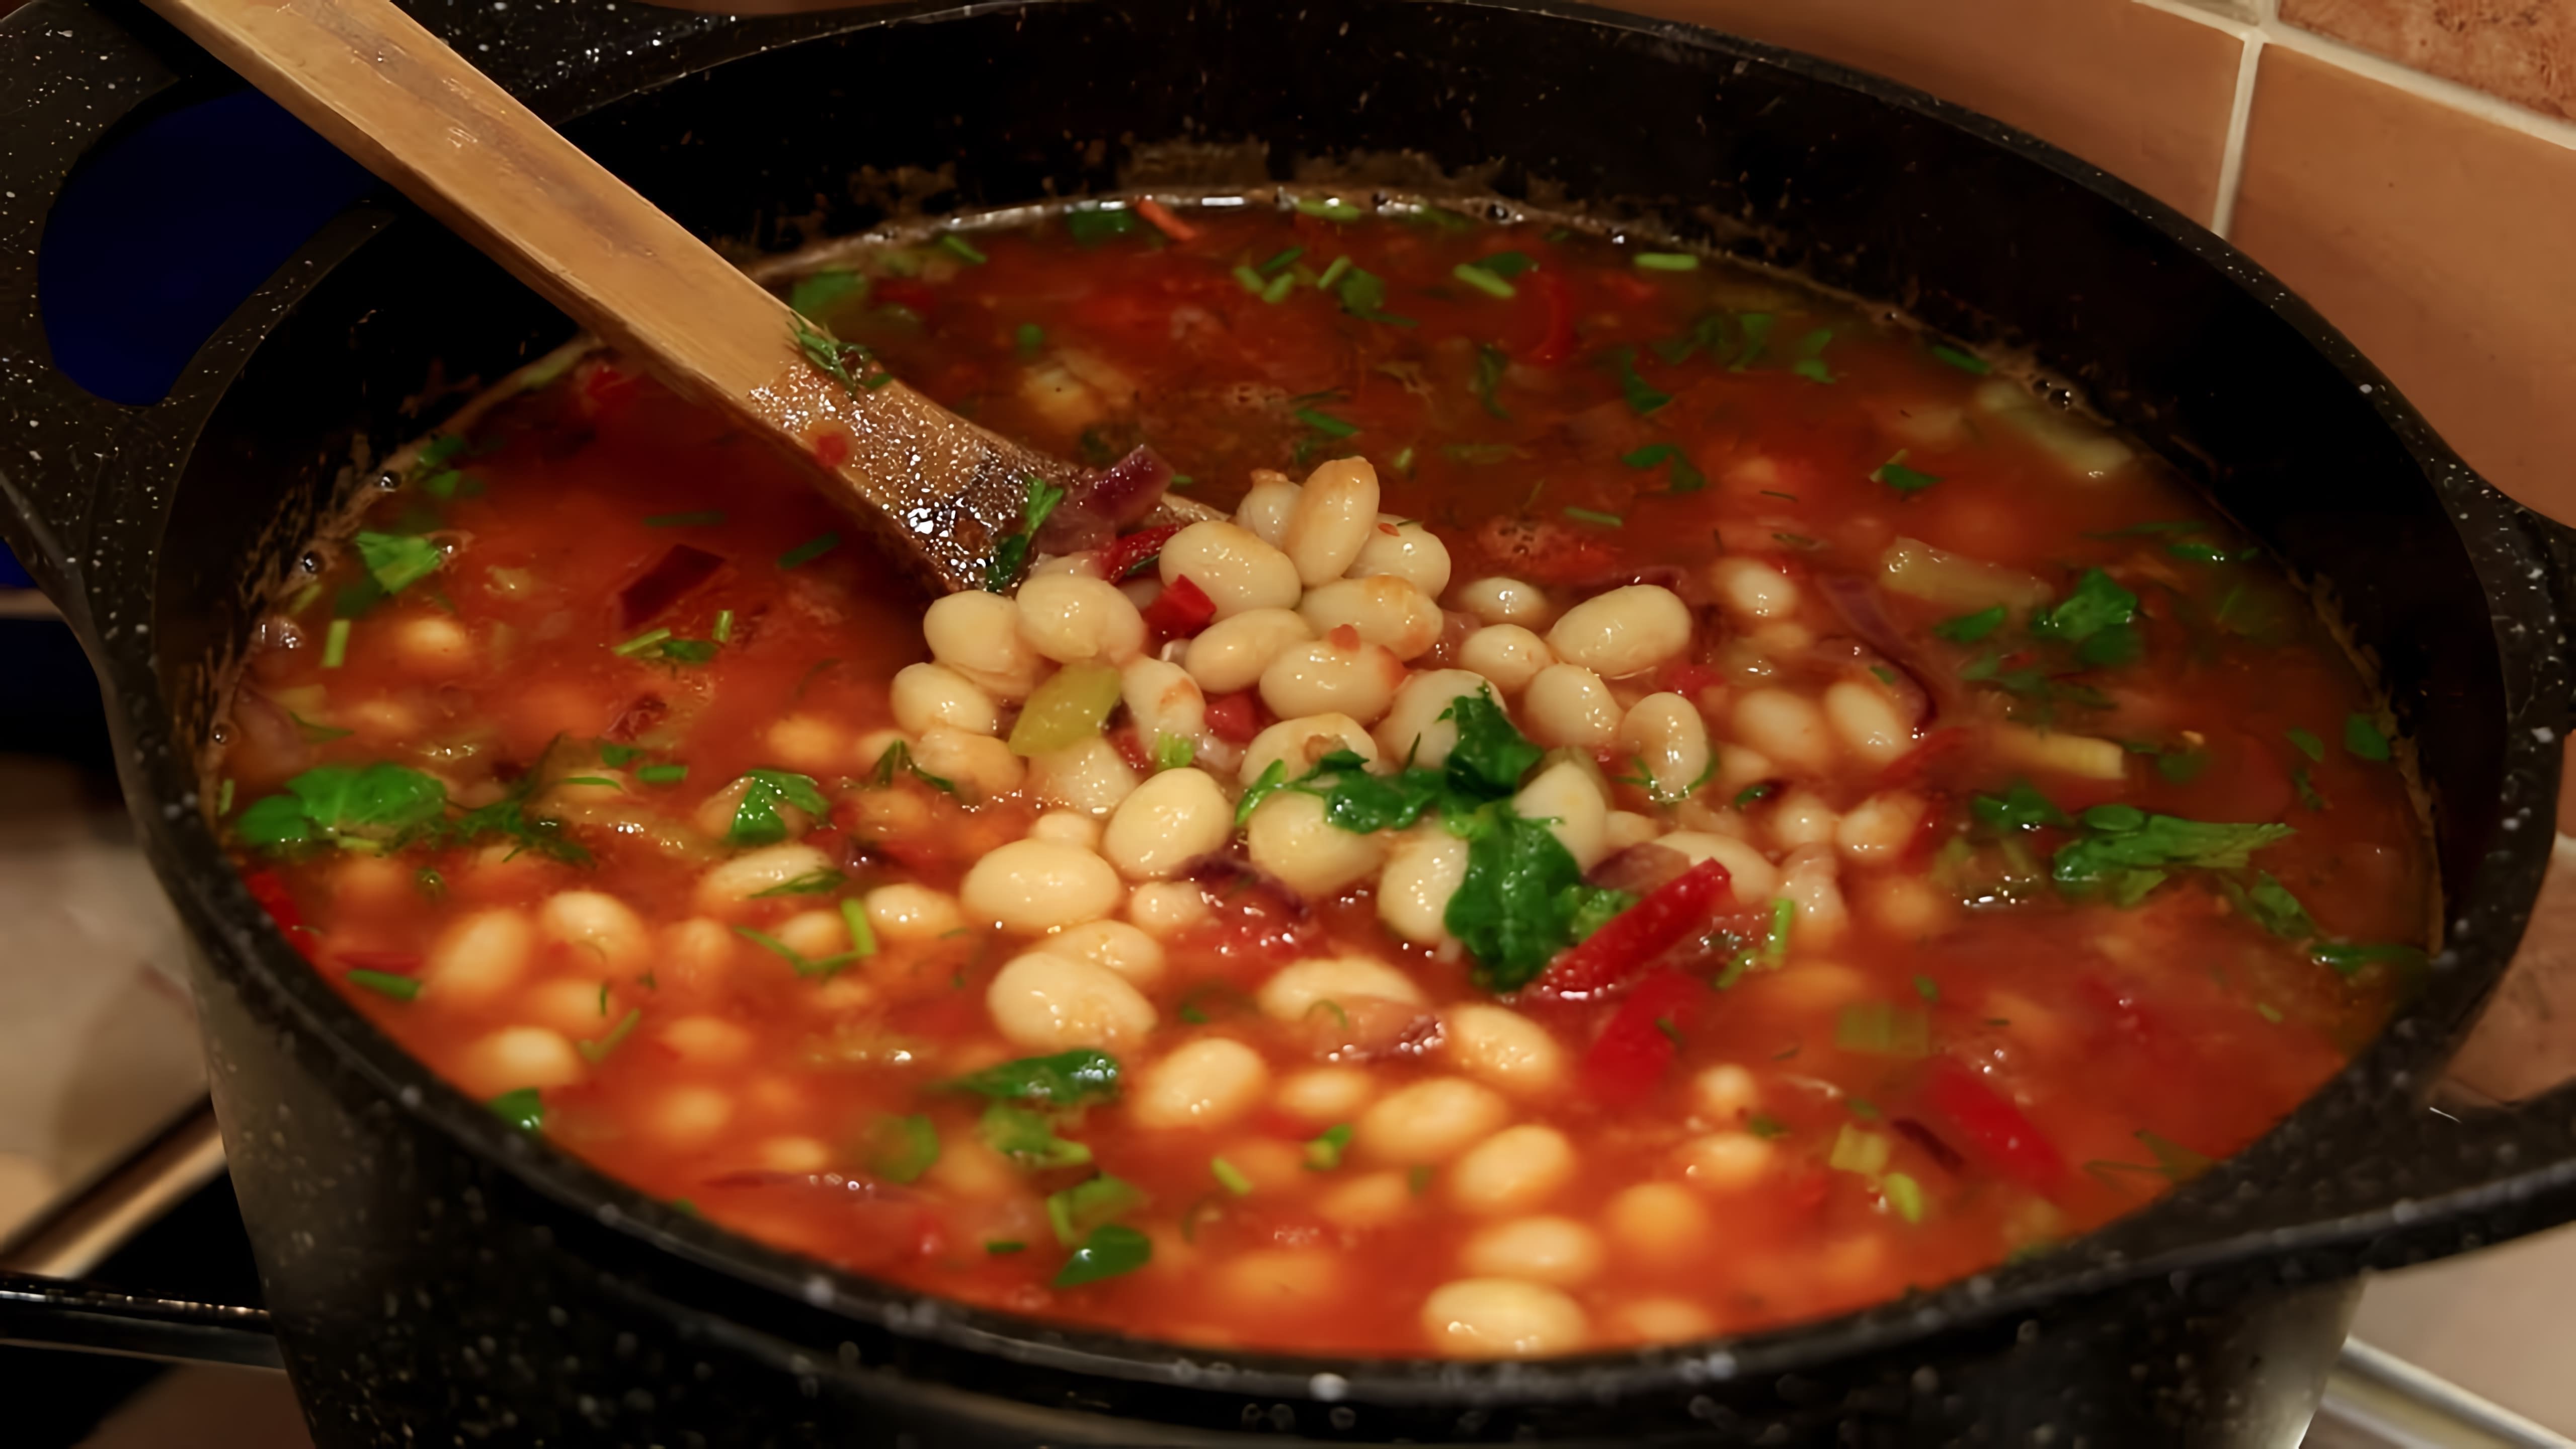 Видео посвящено приготовлению бобов и приготовлению супа/рагу с бобами в качестве основного ингредиента